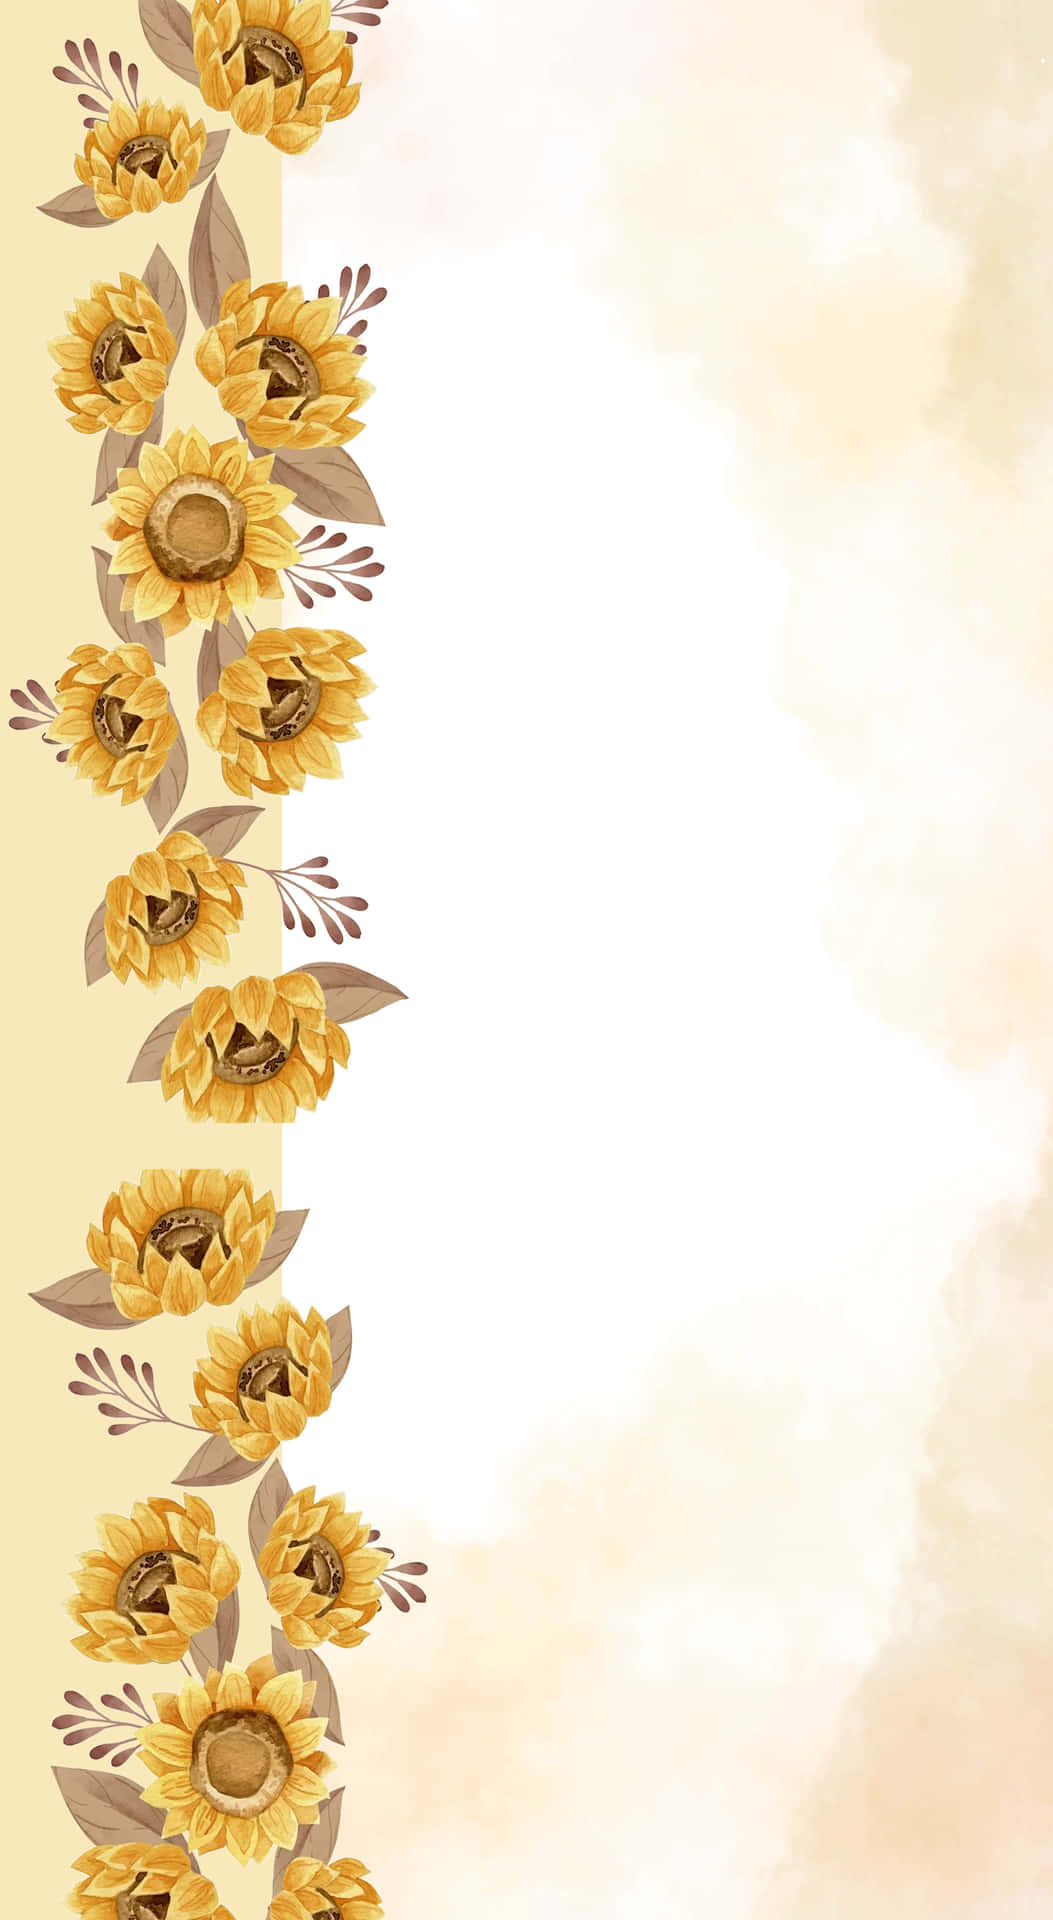 Sunflower 2106 X 3840 Background